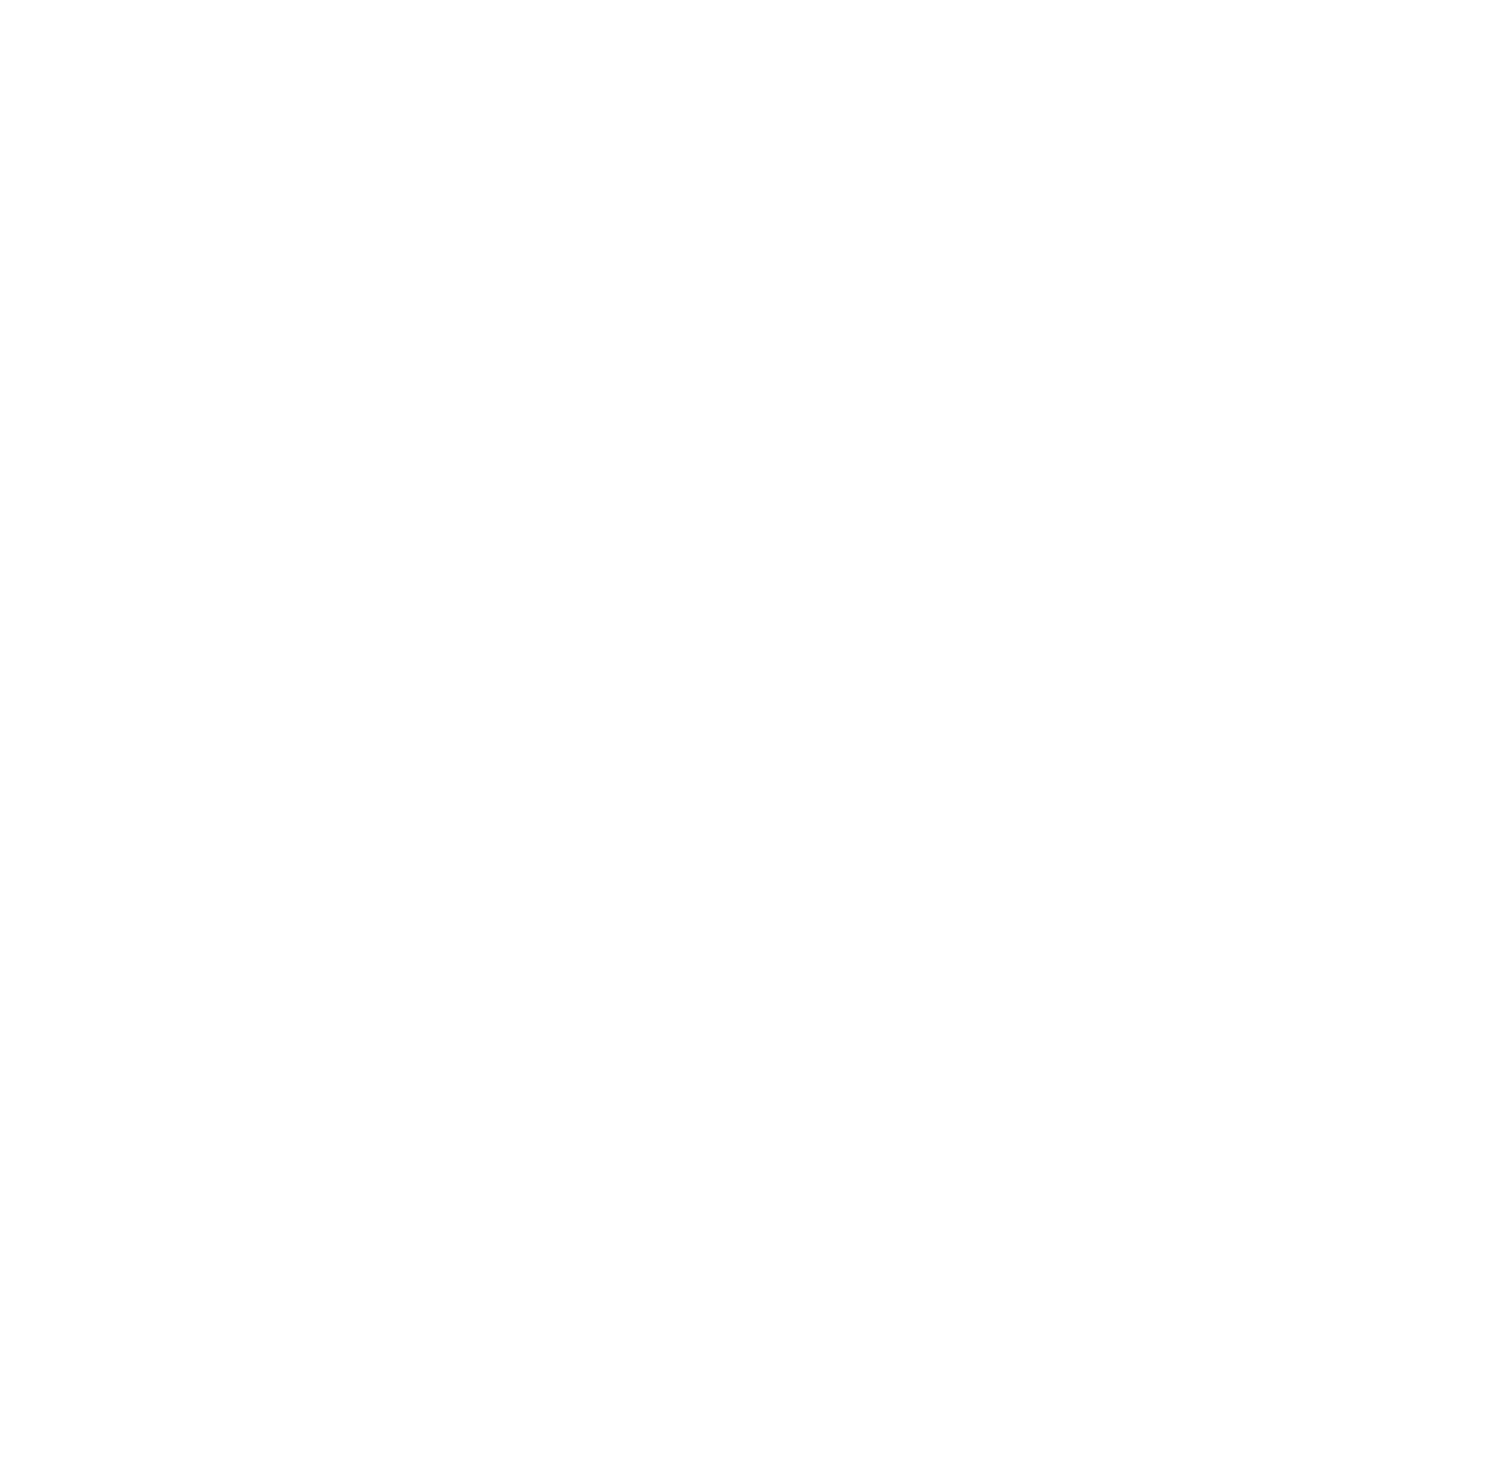 Marietta Kratz